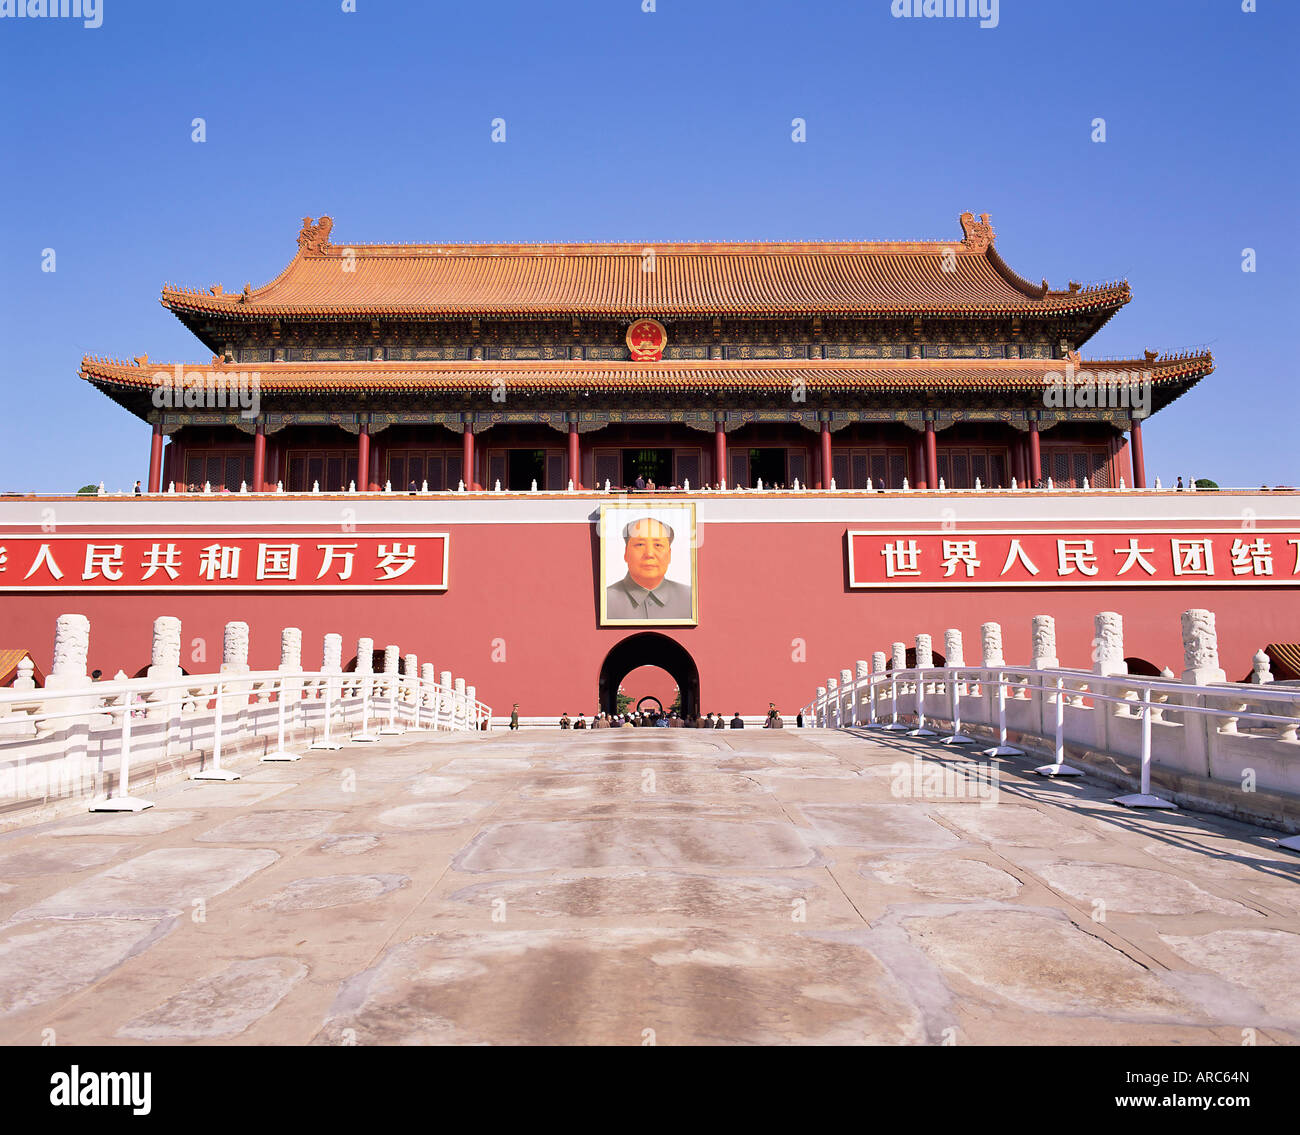 Porträt des Vorsitzenden Mao, Tor des himmlischen Friedens (Tiananmen), Platz des himmlischen Friedens, Peking, China, Asien Stockfoto